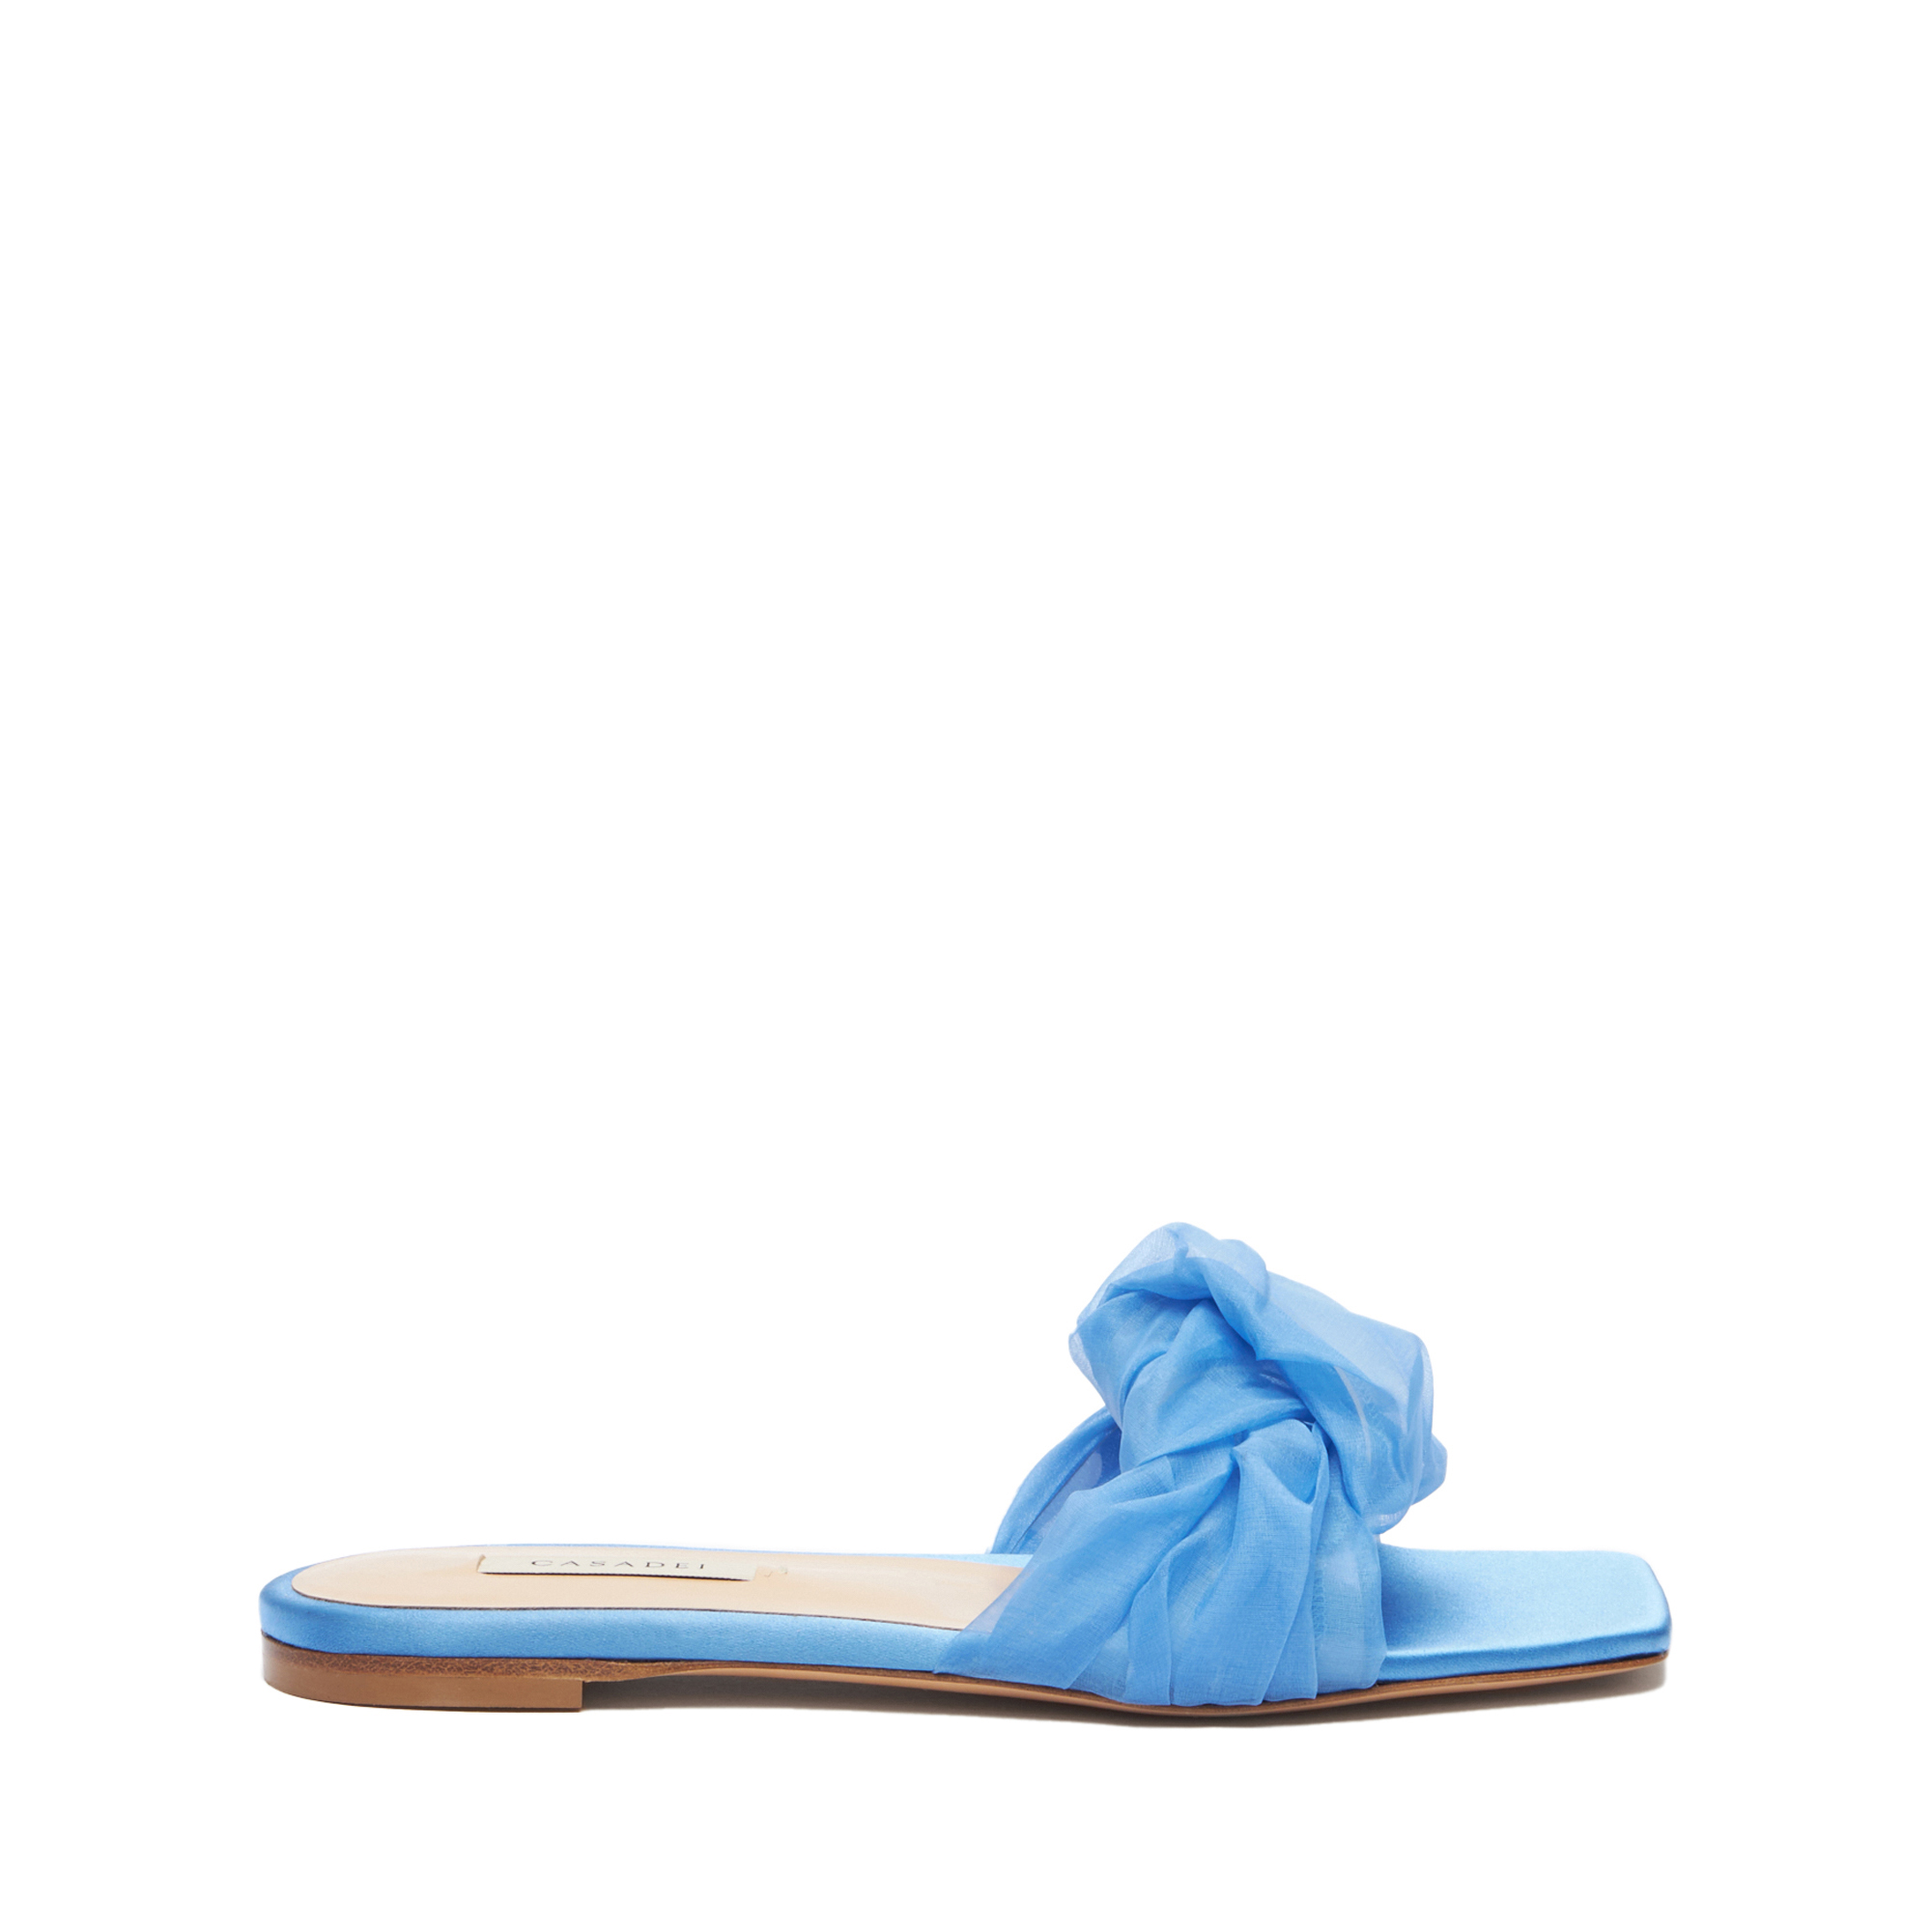 Casadei Geraldine Helen Slider - Woman Flats And Loafers Bohemenian Blue 38